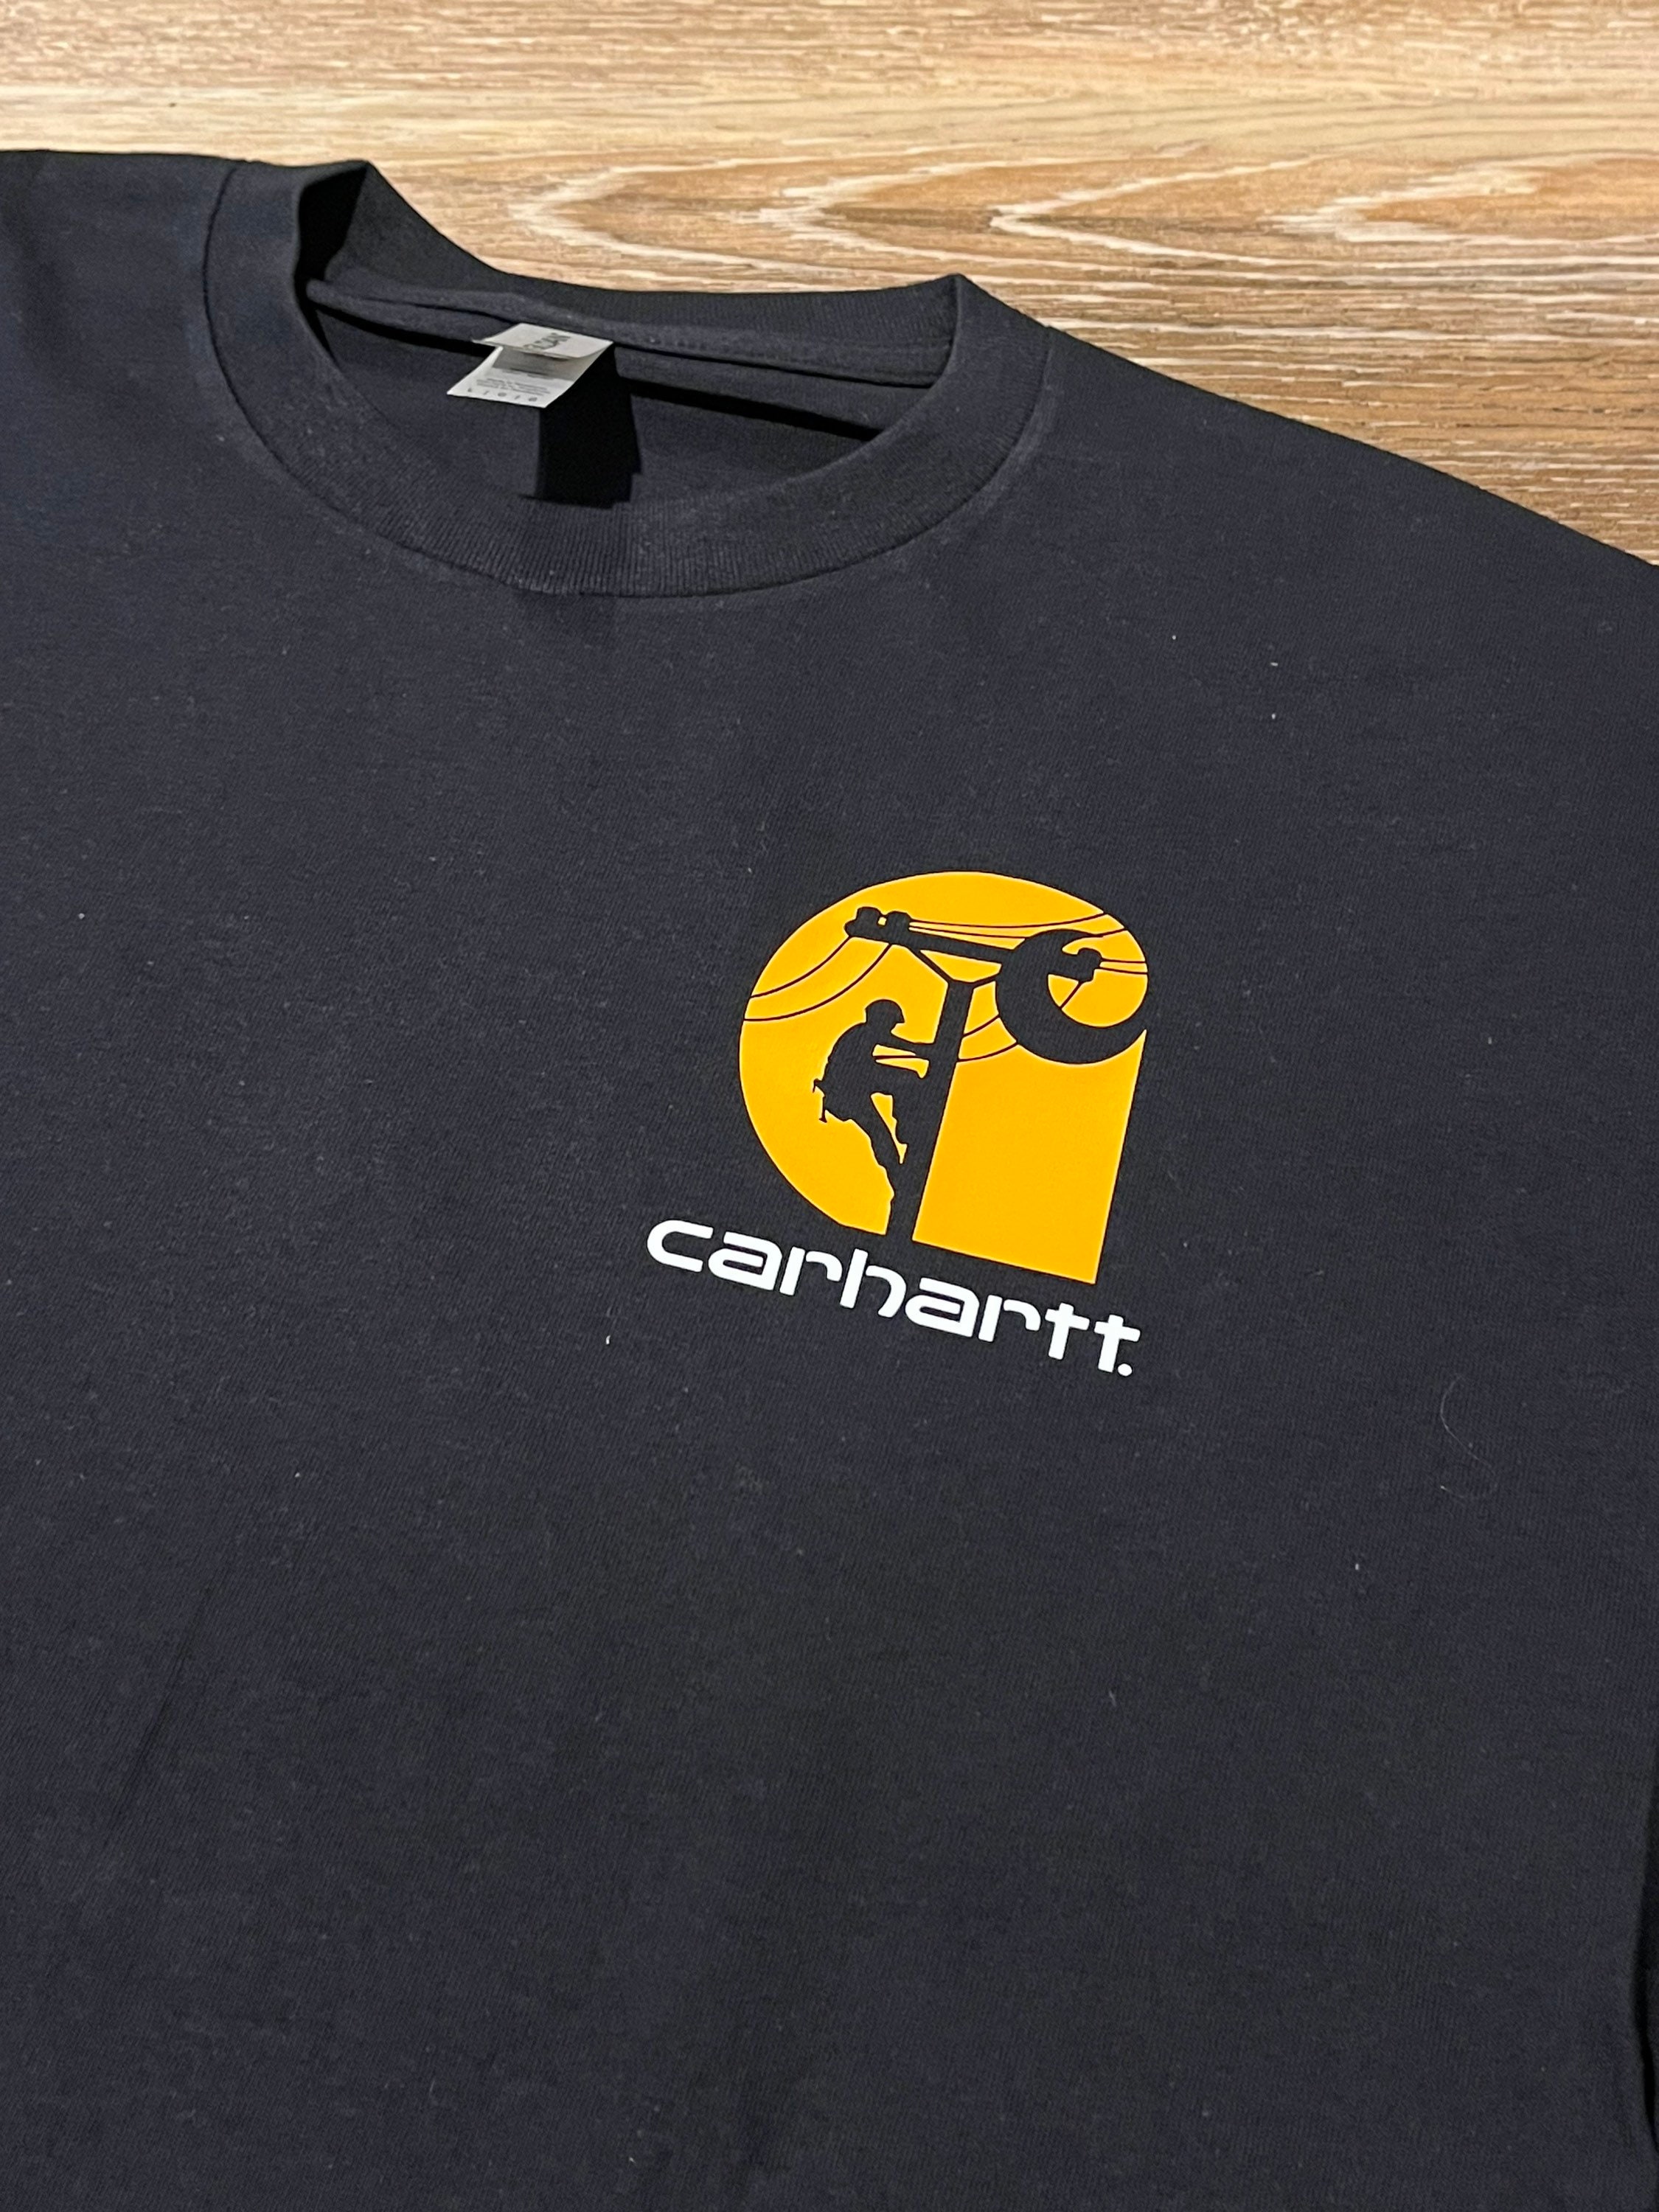 Carhartt Logo - Etsy